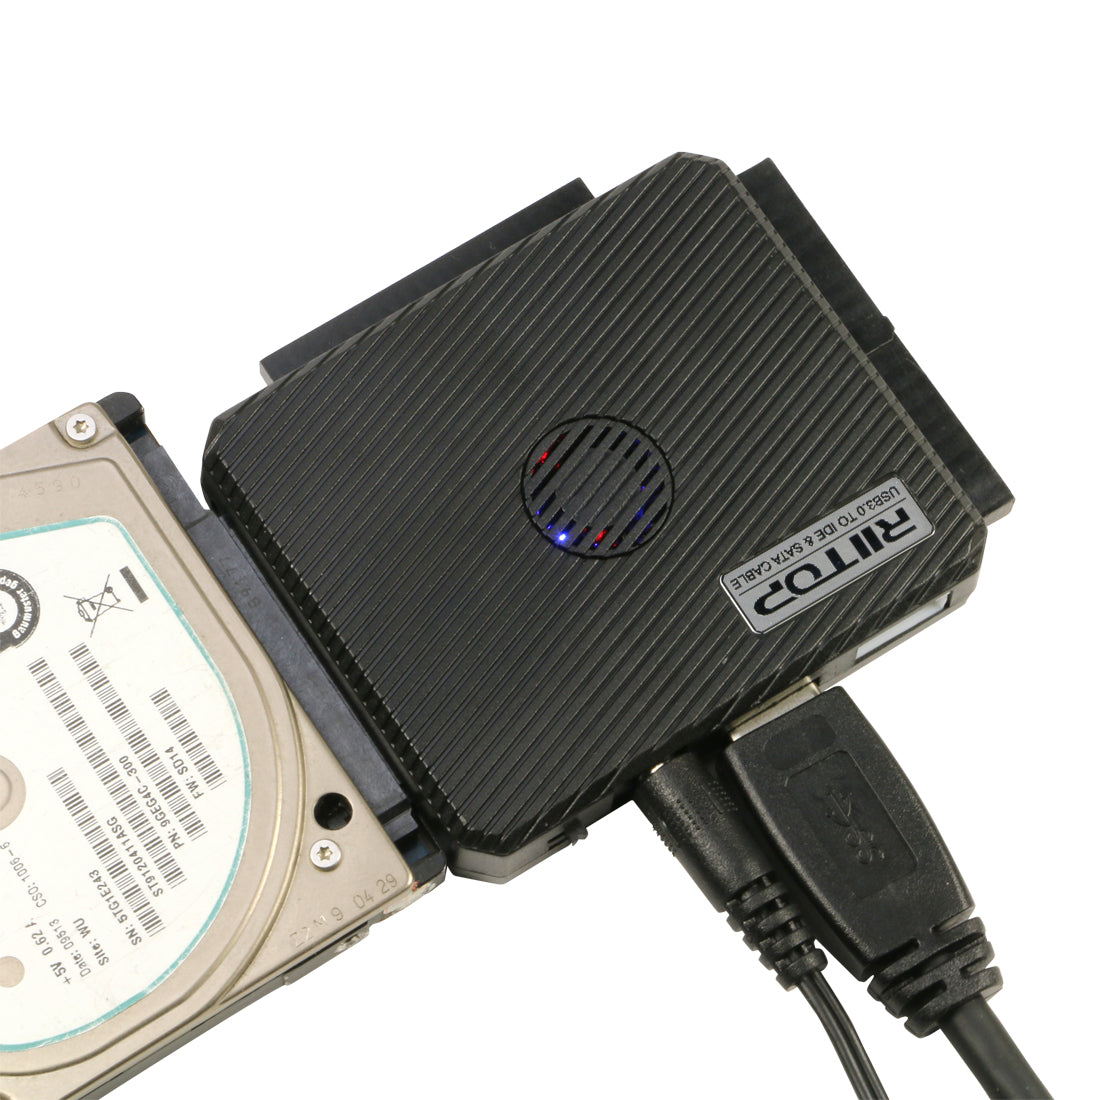 External 12V/5V USB to IDE+SATA Power Supply Adapter HDD/Hard